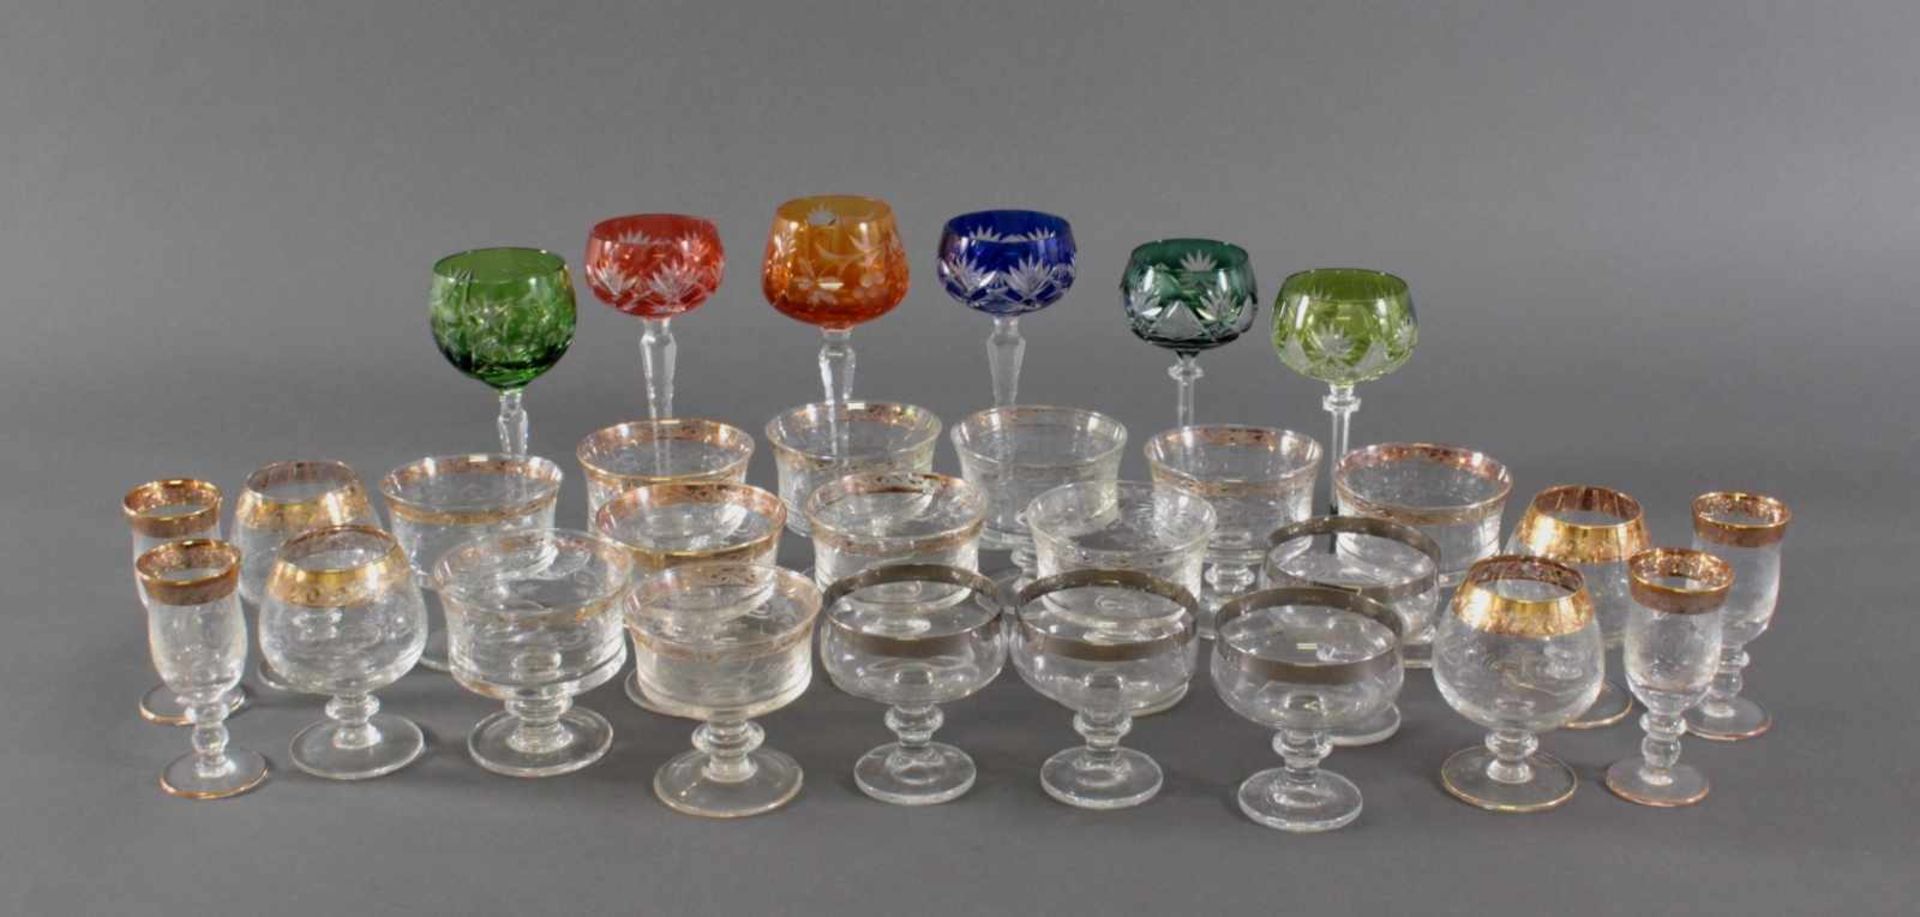 Trinkgläser Konvolut, 29 StückFarbloses Kristallgläser. 6 Römer, verschiedenfarbig, unterschiedliche